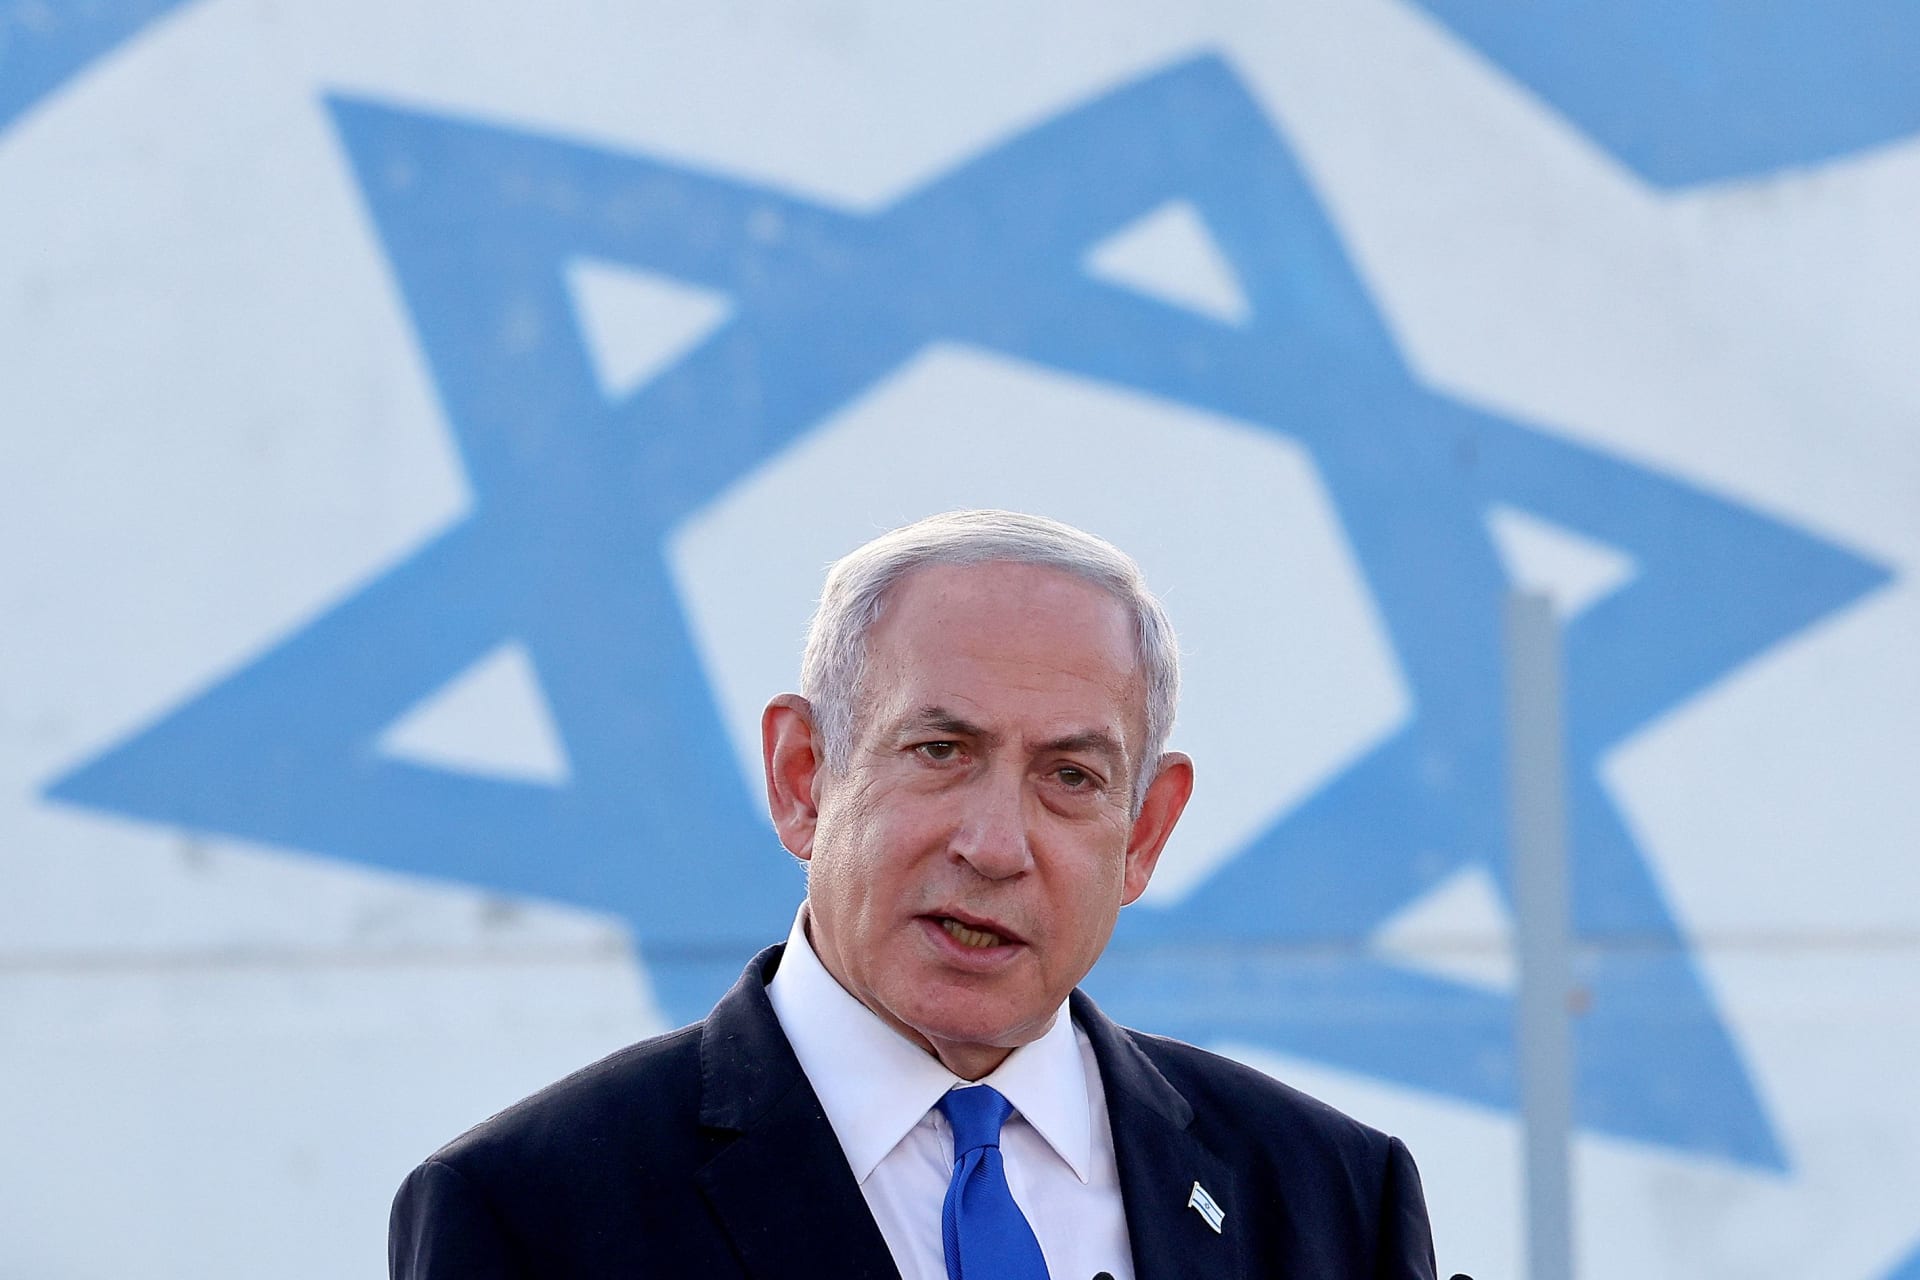 نتنياهو يجدد معارضته لإقامة "دولة فلسطينية".. وبن غفير يوضح موقفه